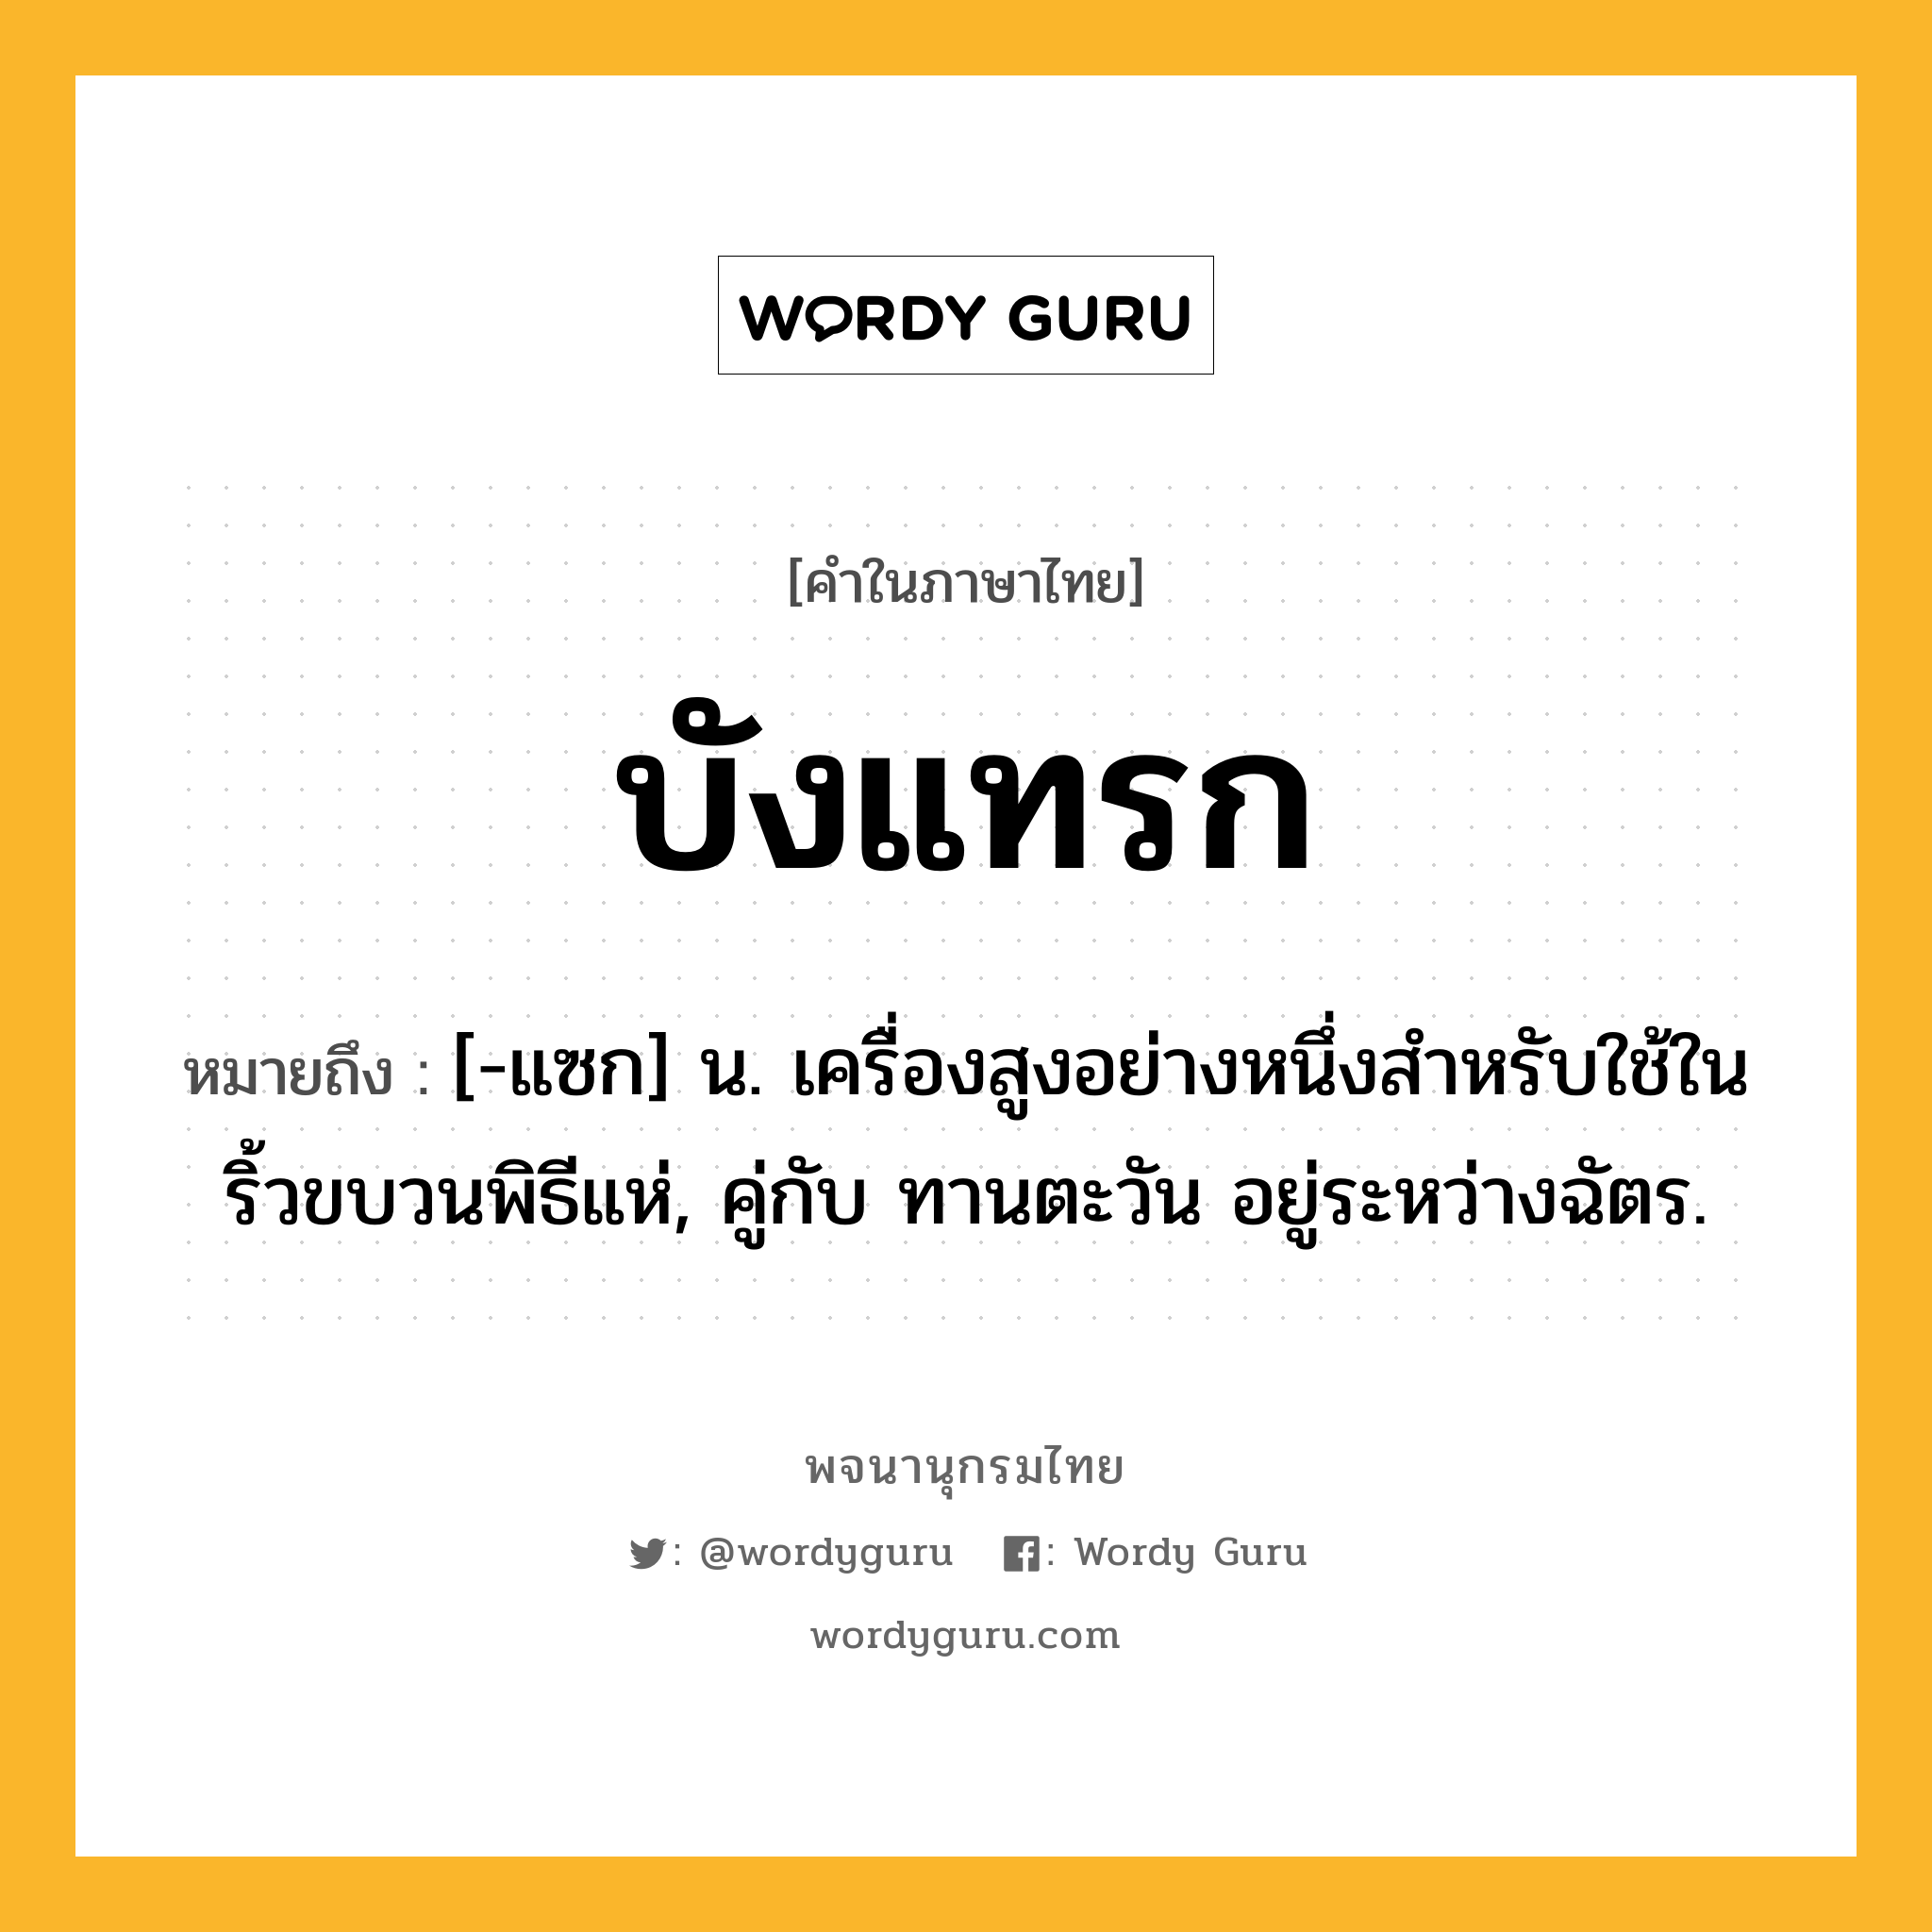 บังแทรก ความหมาย หมายถึงอะไร?, คำในภาษาไทย บังแทรก หมายถึง [-แซก] น. เครื่องสูงอย่างหนึ่งสําหรับใช้ในริ้วขบวนพิธีแห่, คู่กับ ทานตะวัน อยู่ระหว่างฉัตร.